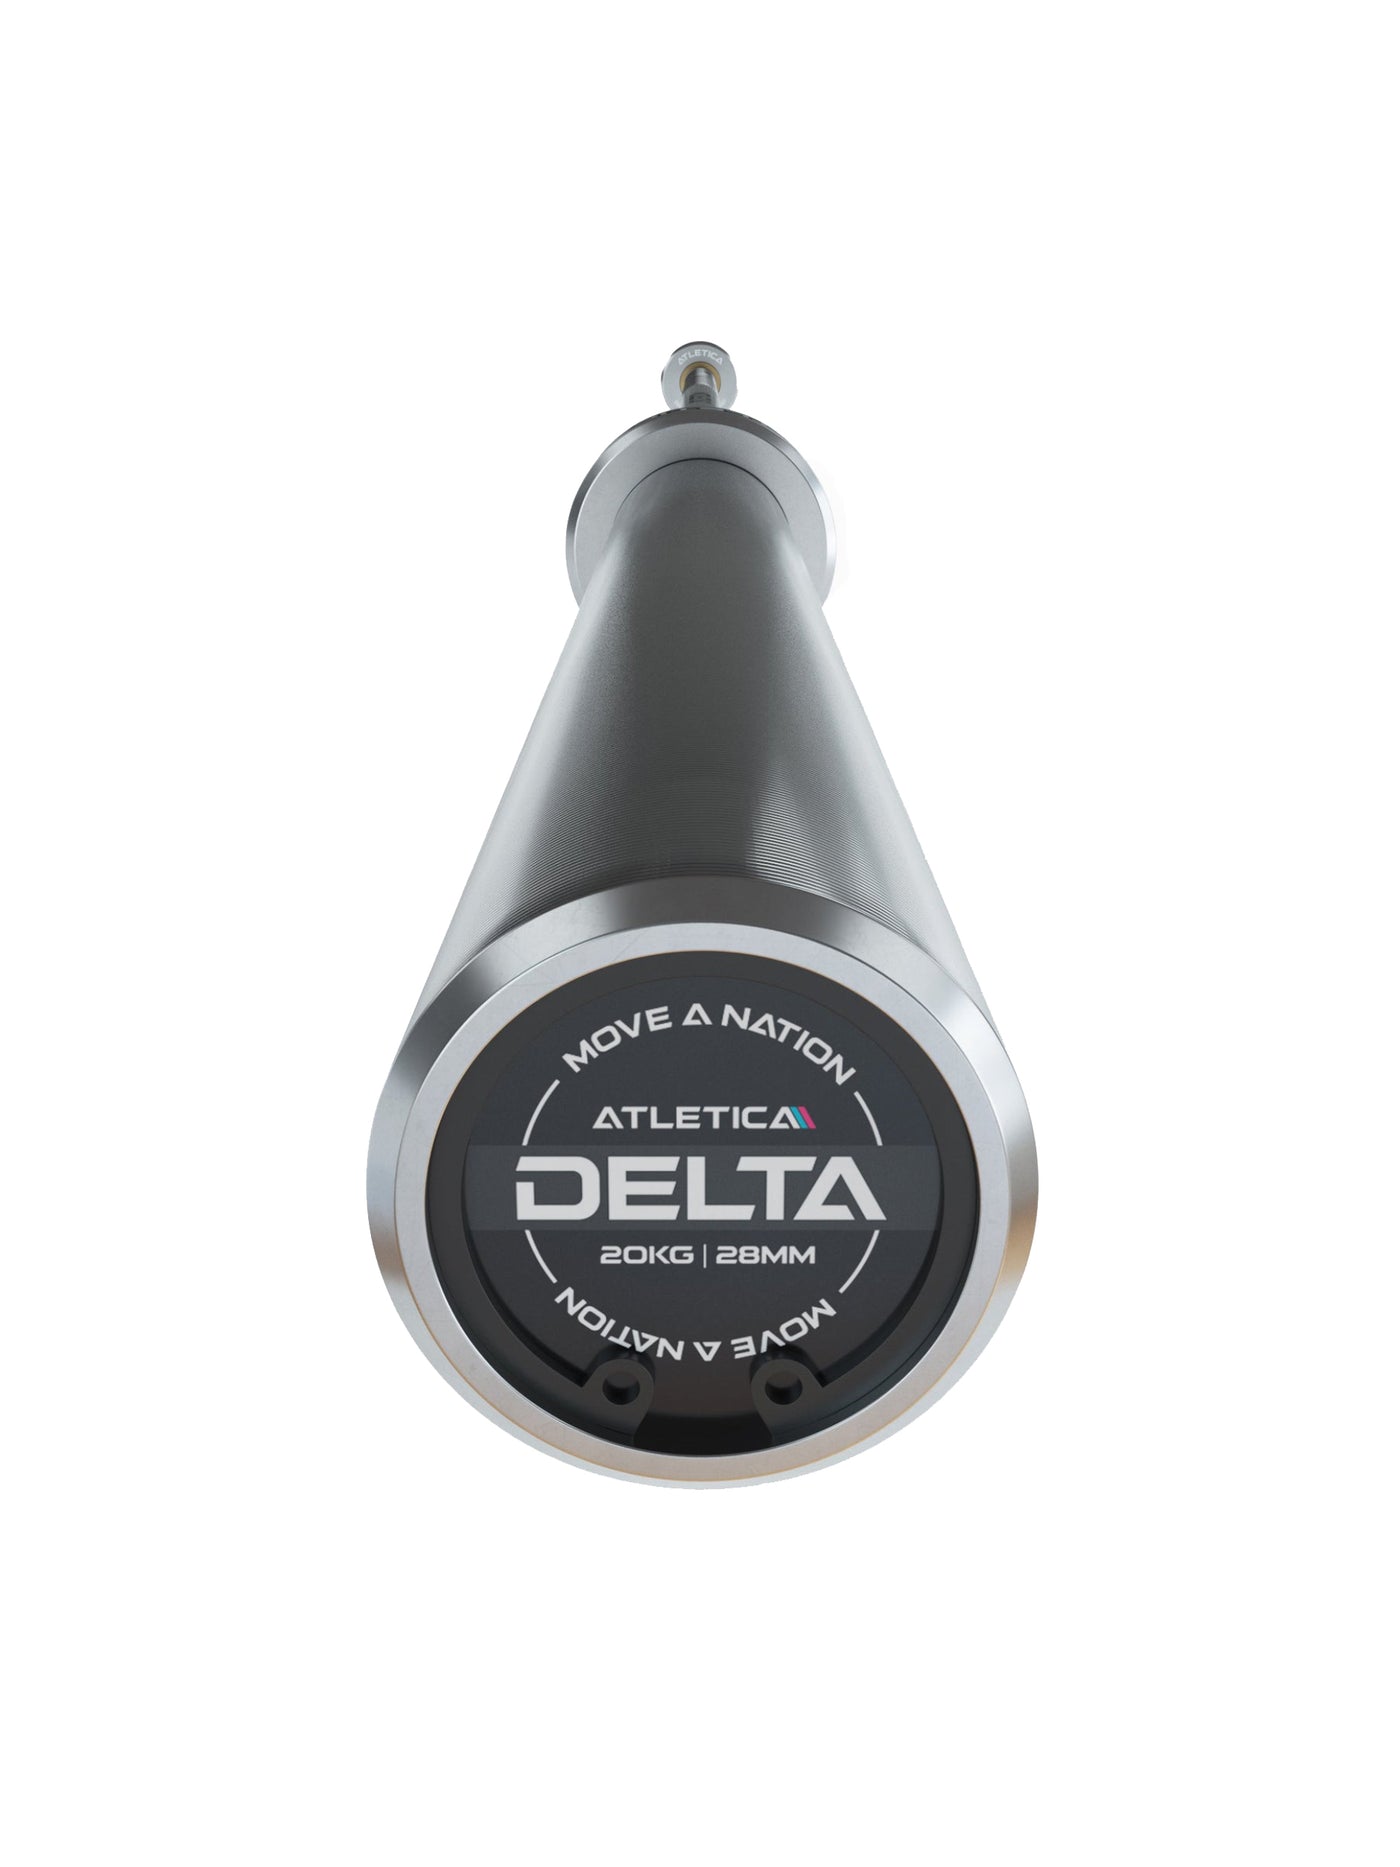 ATLETICA Langhantel Delta Set: Delta Hybrid Stange| 75kg Hantelscheiben | Alu-Hantelverschlüsse | Für Gewichtheben, Powerlifting und CrossFit | Ø 50mm, #delta-hybrid-barbell-farbe_chrome